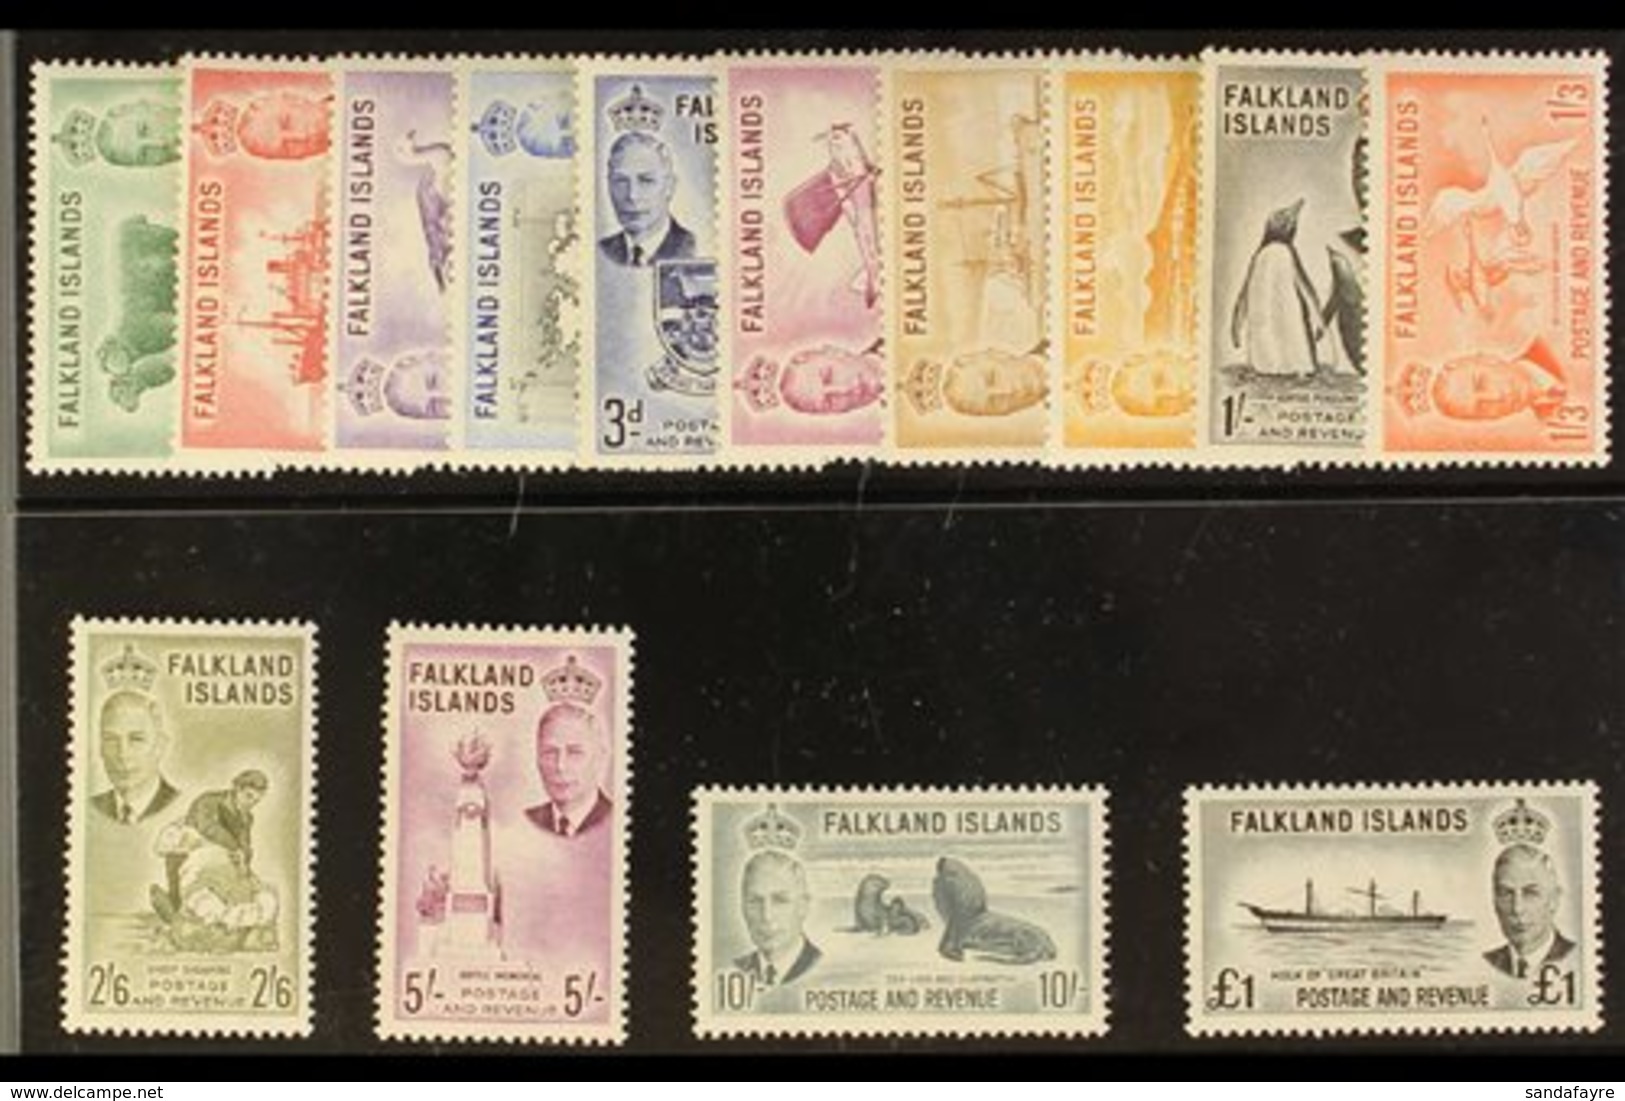 1952 KGVI Definitives Complete Set, SG 172/85, Very Fine Never Hinged Mint. (14 Stamps) For More Images, Please Visit Ht - Falklandeilanden